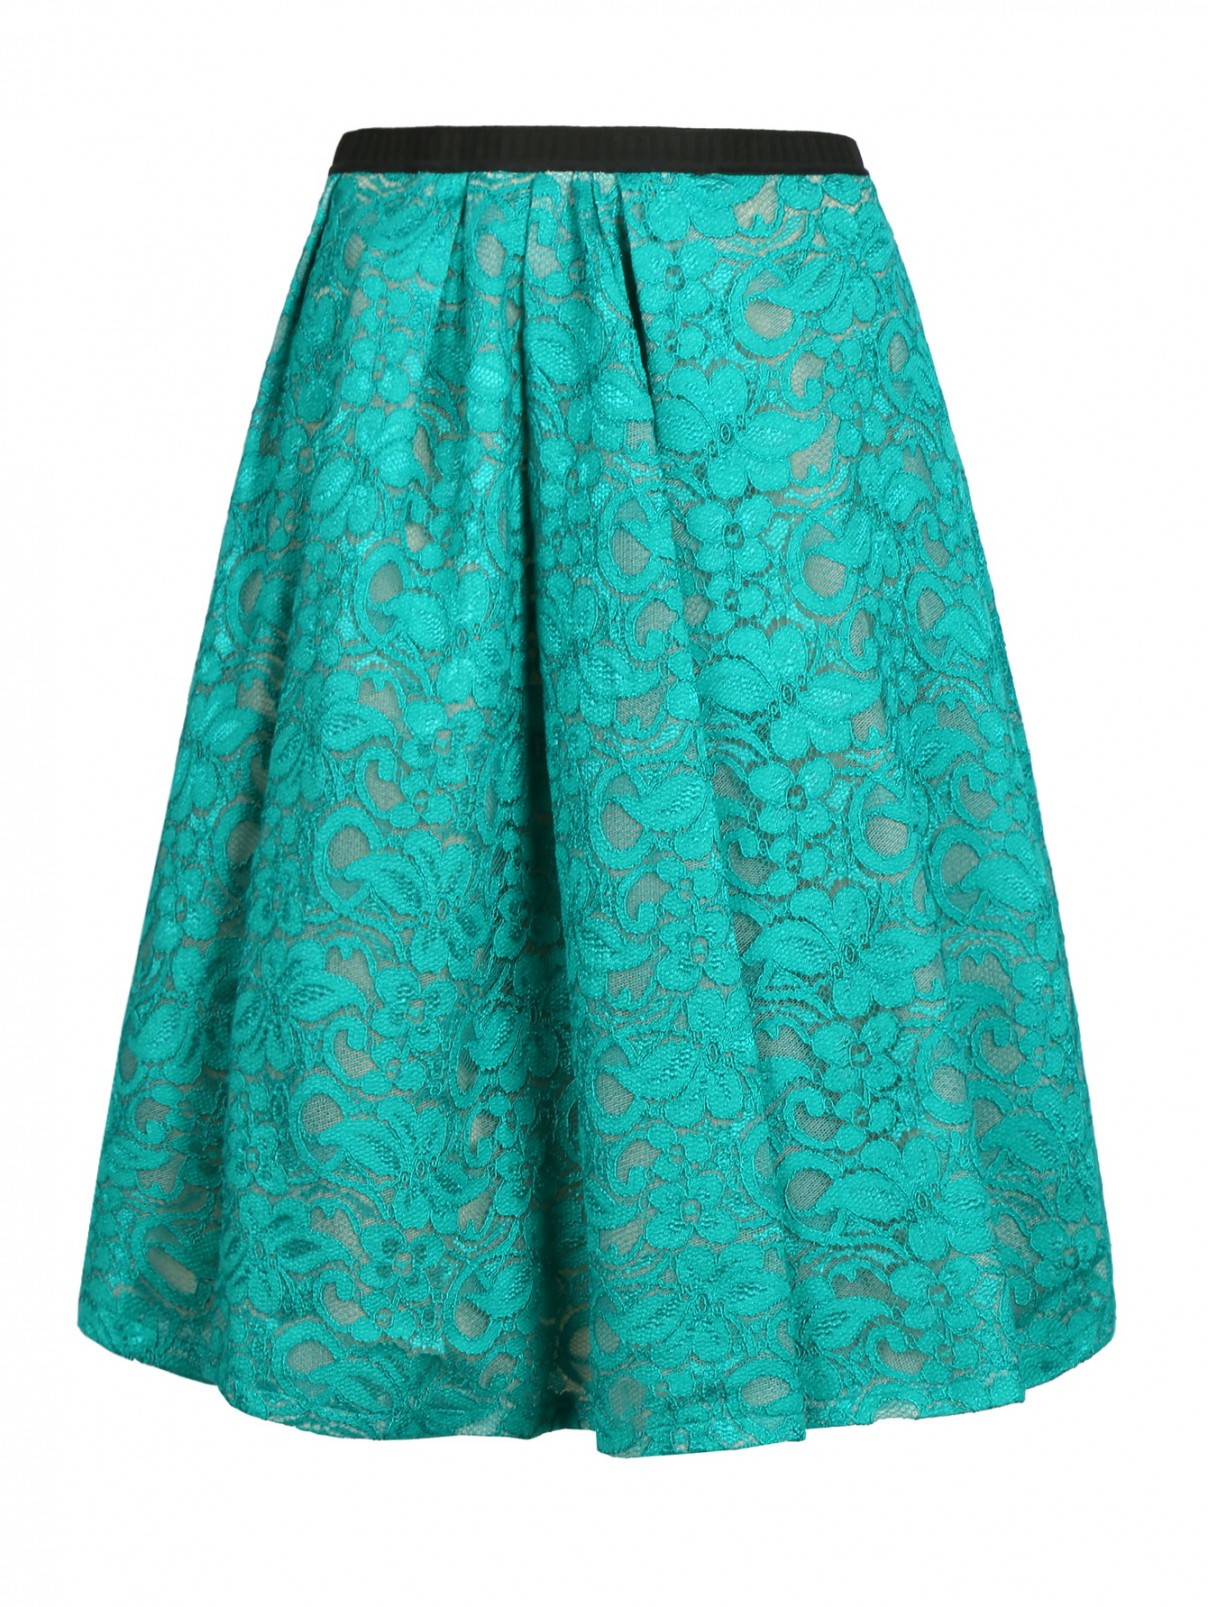 Кружевная юбка-солнце Antonio Marras  –  Общий вид  – Цвет:  Зеленый